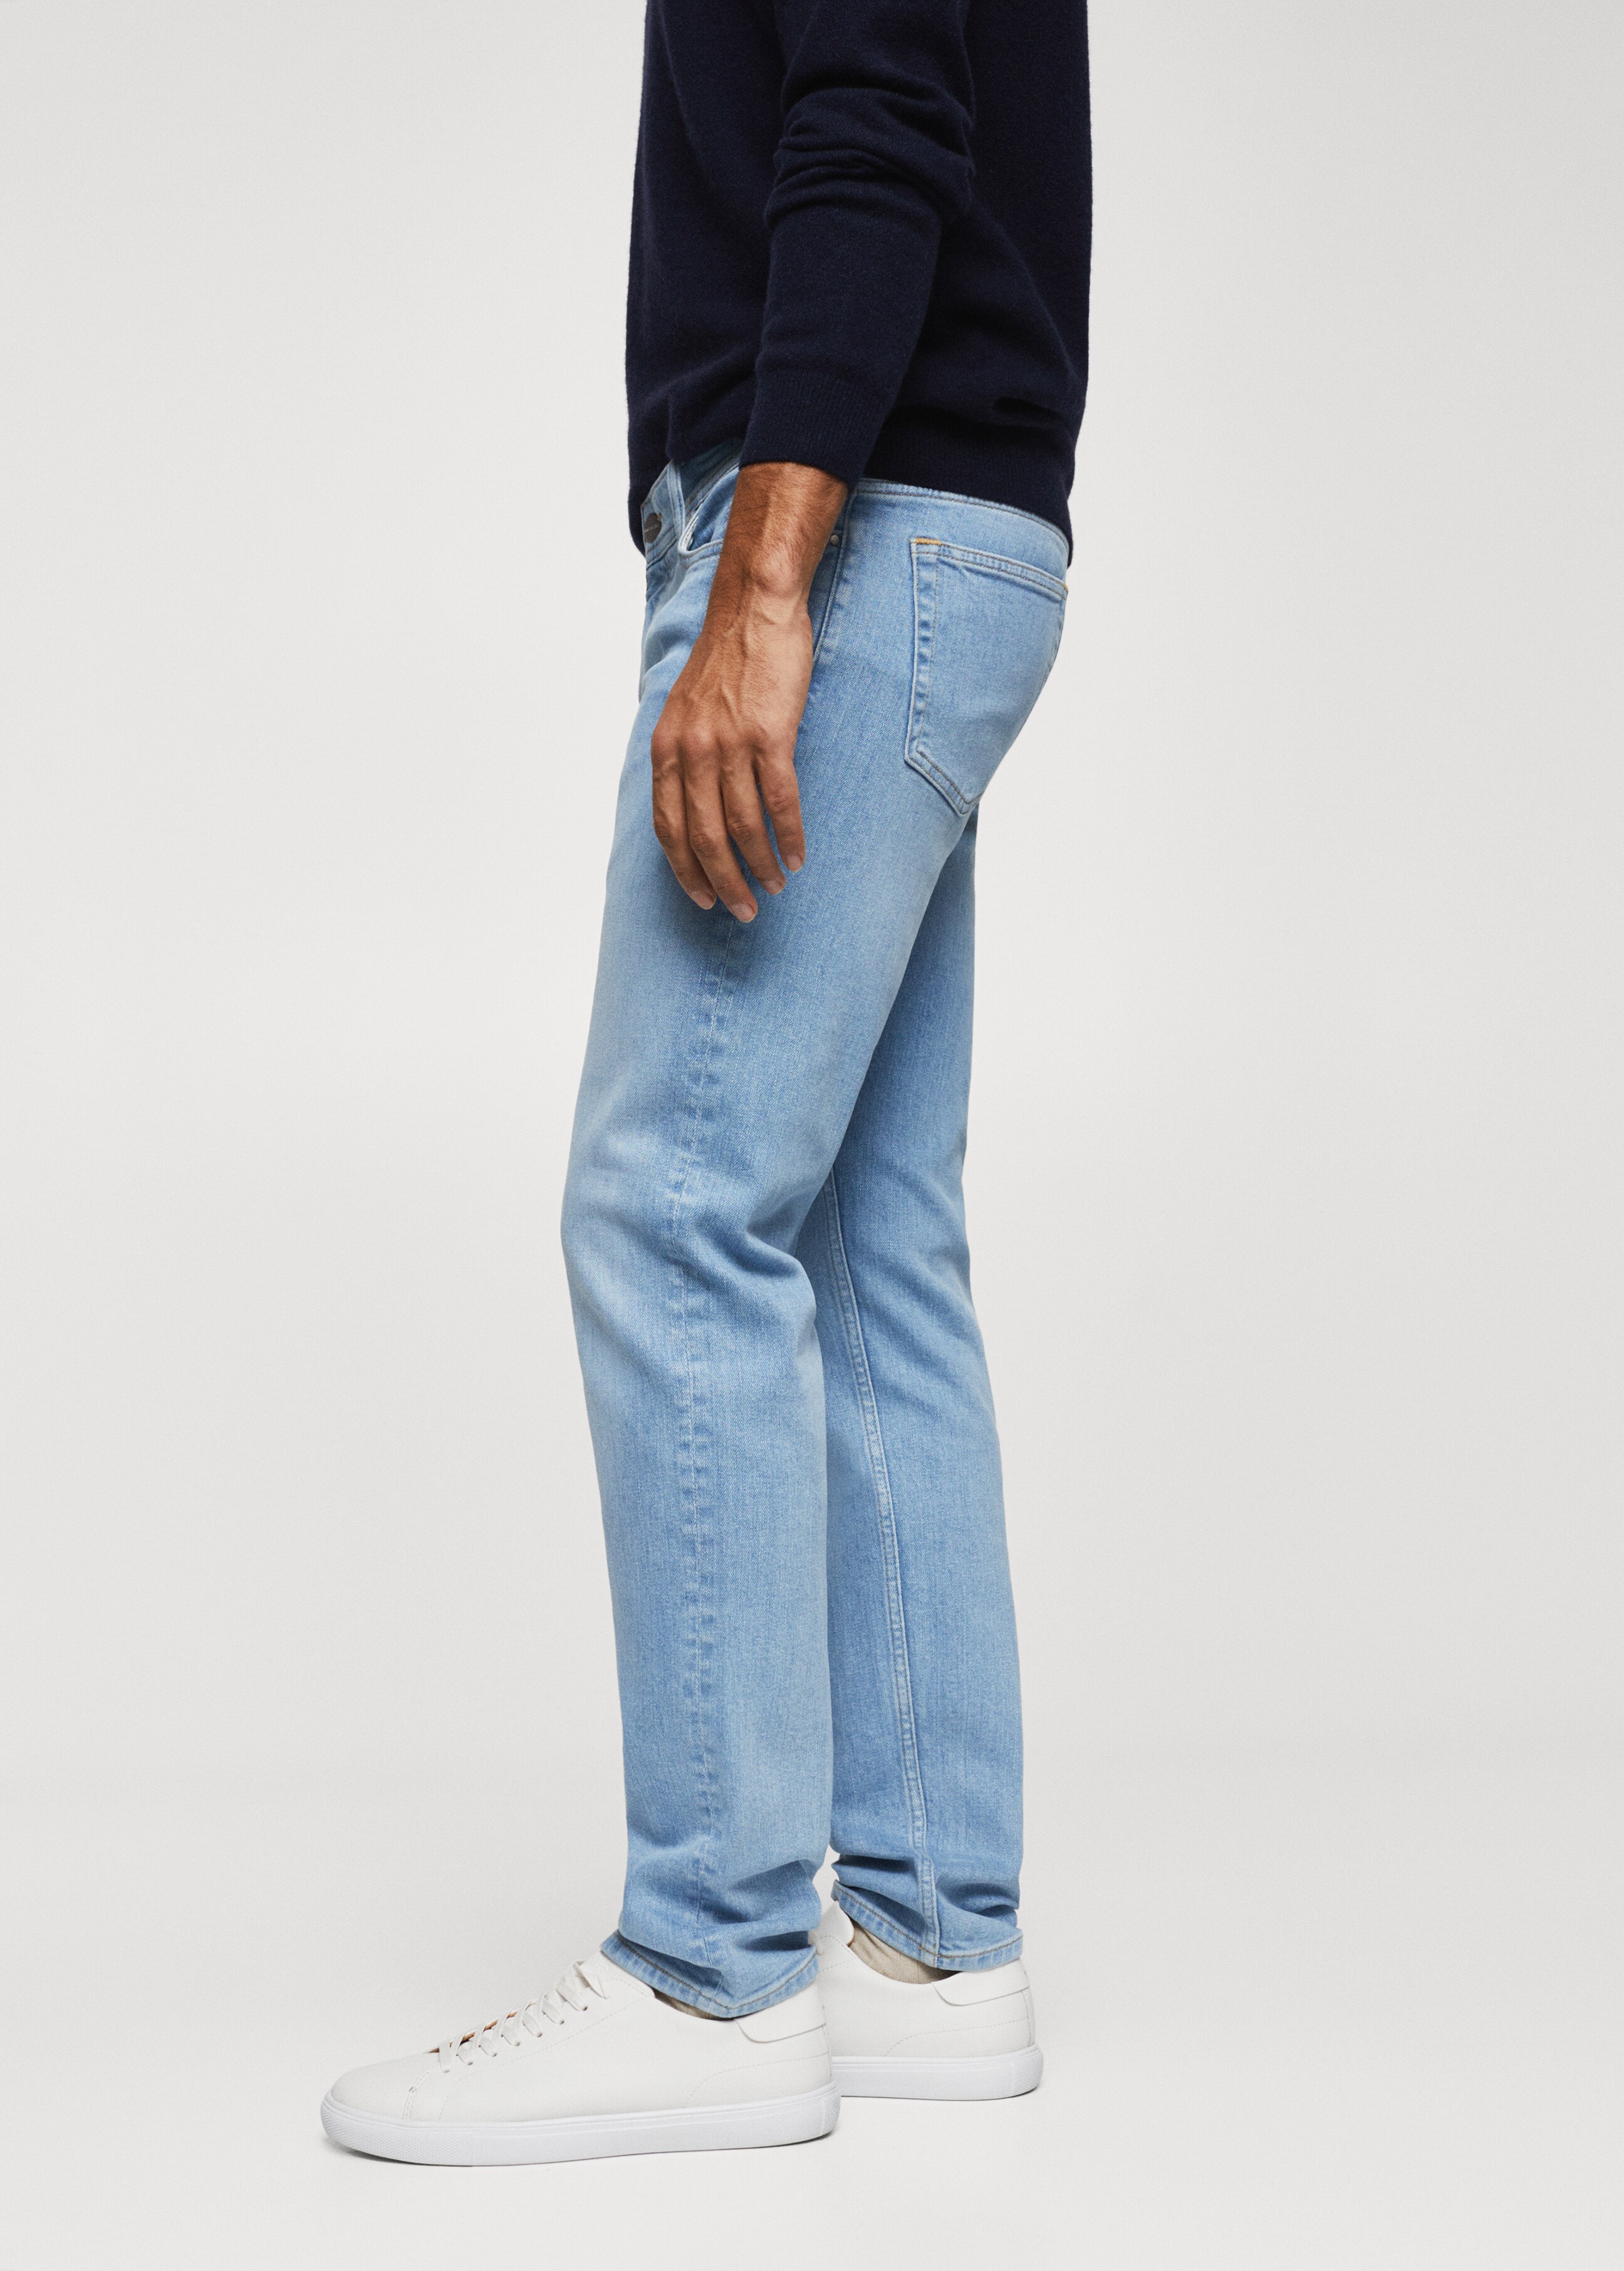 Jeans Jan slim fit  - Dettaglio dell'articolo 6